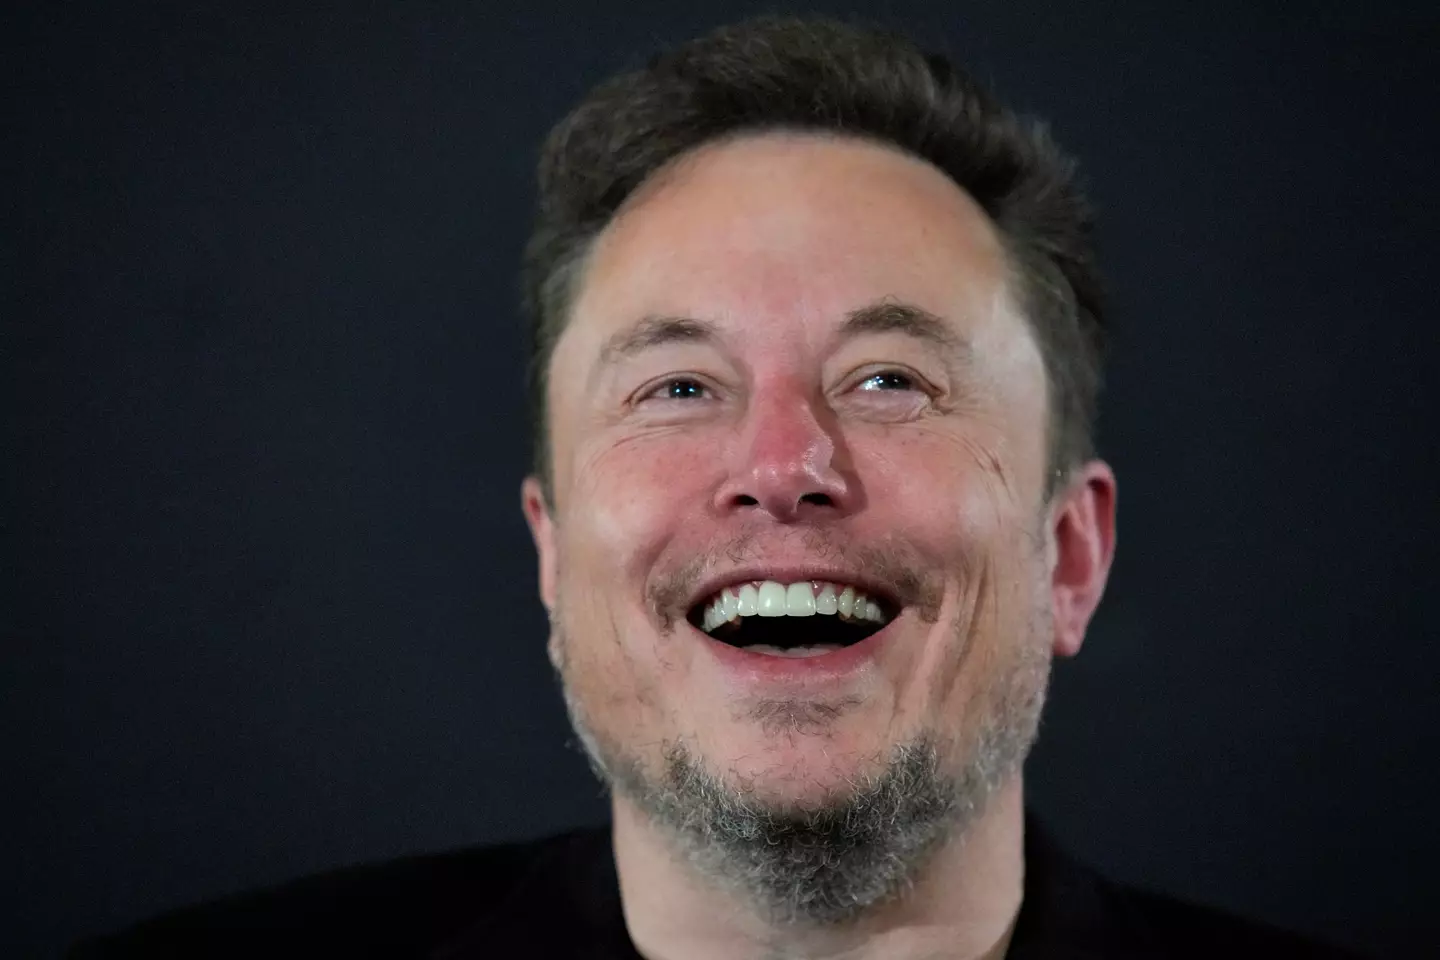 An Elon Musk biopic is on the way.